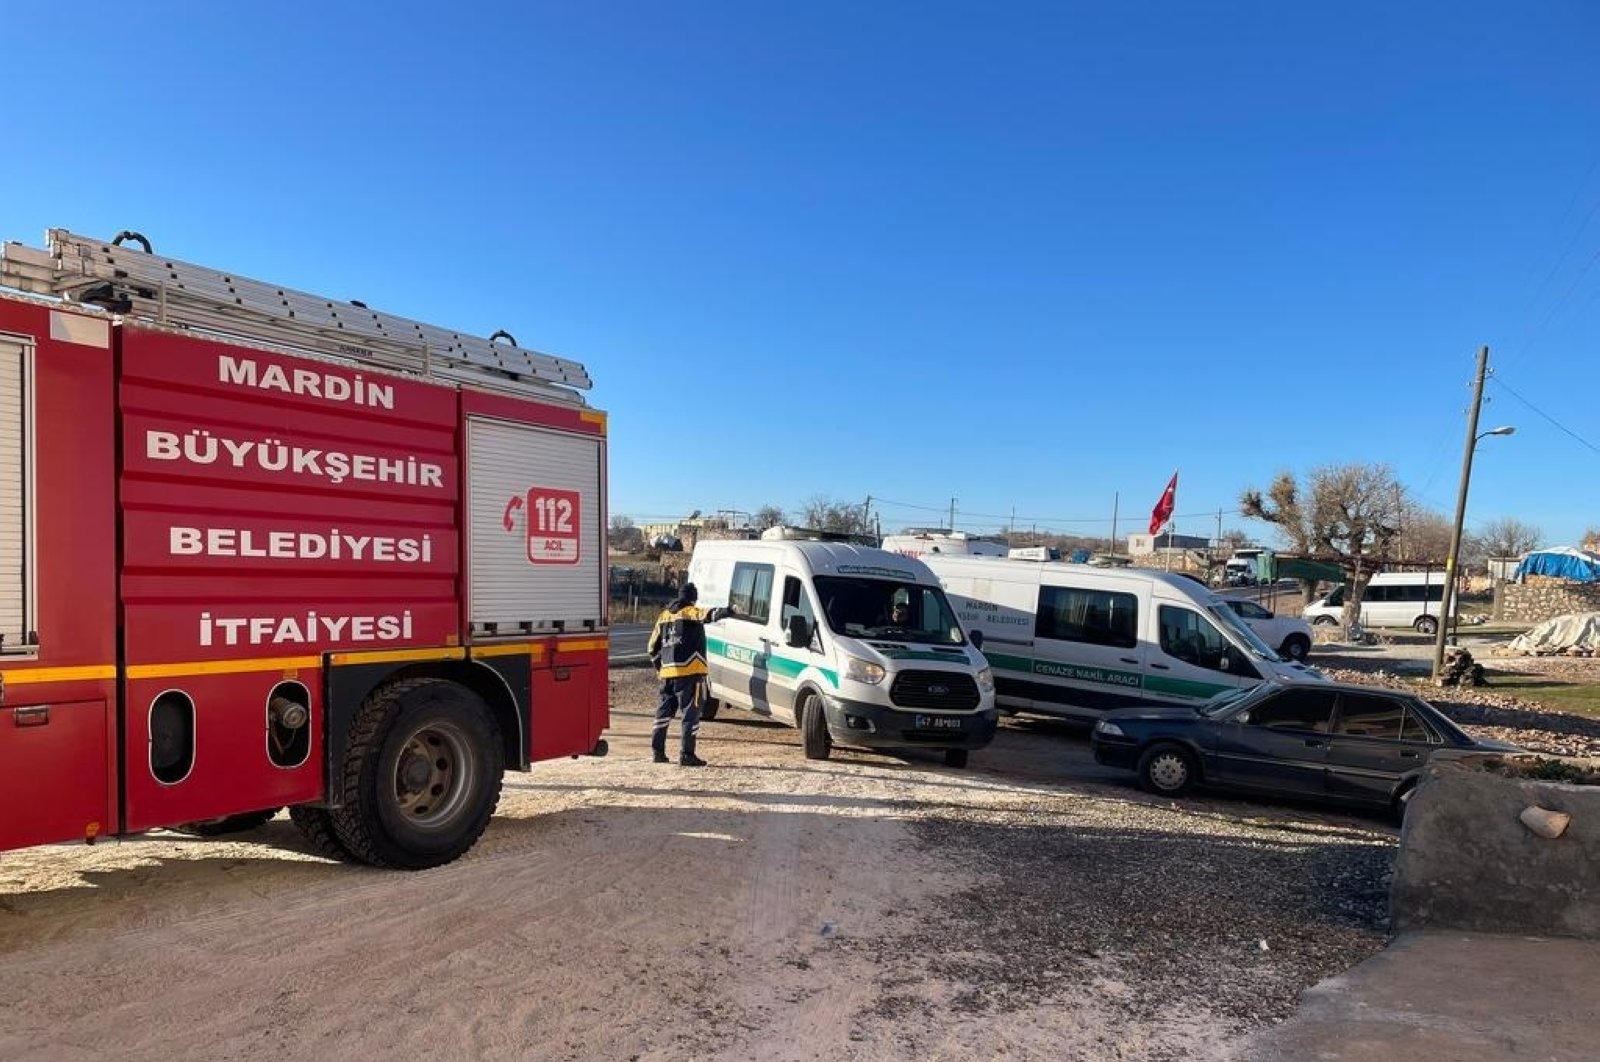 6 tewas, saat minibus terbalik di Mardin Turkiye